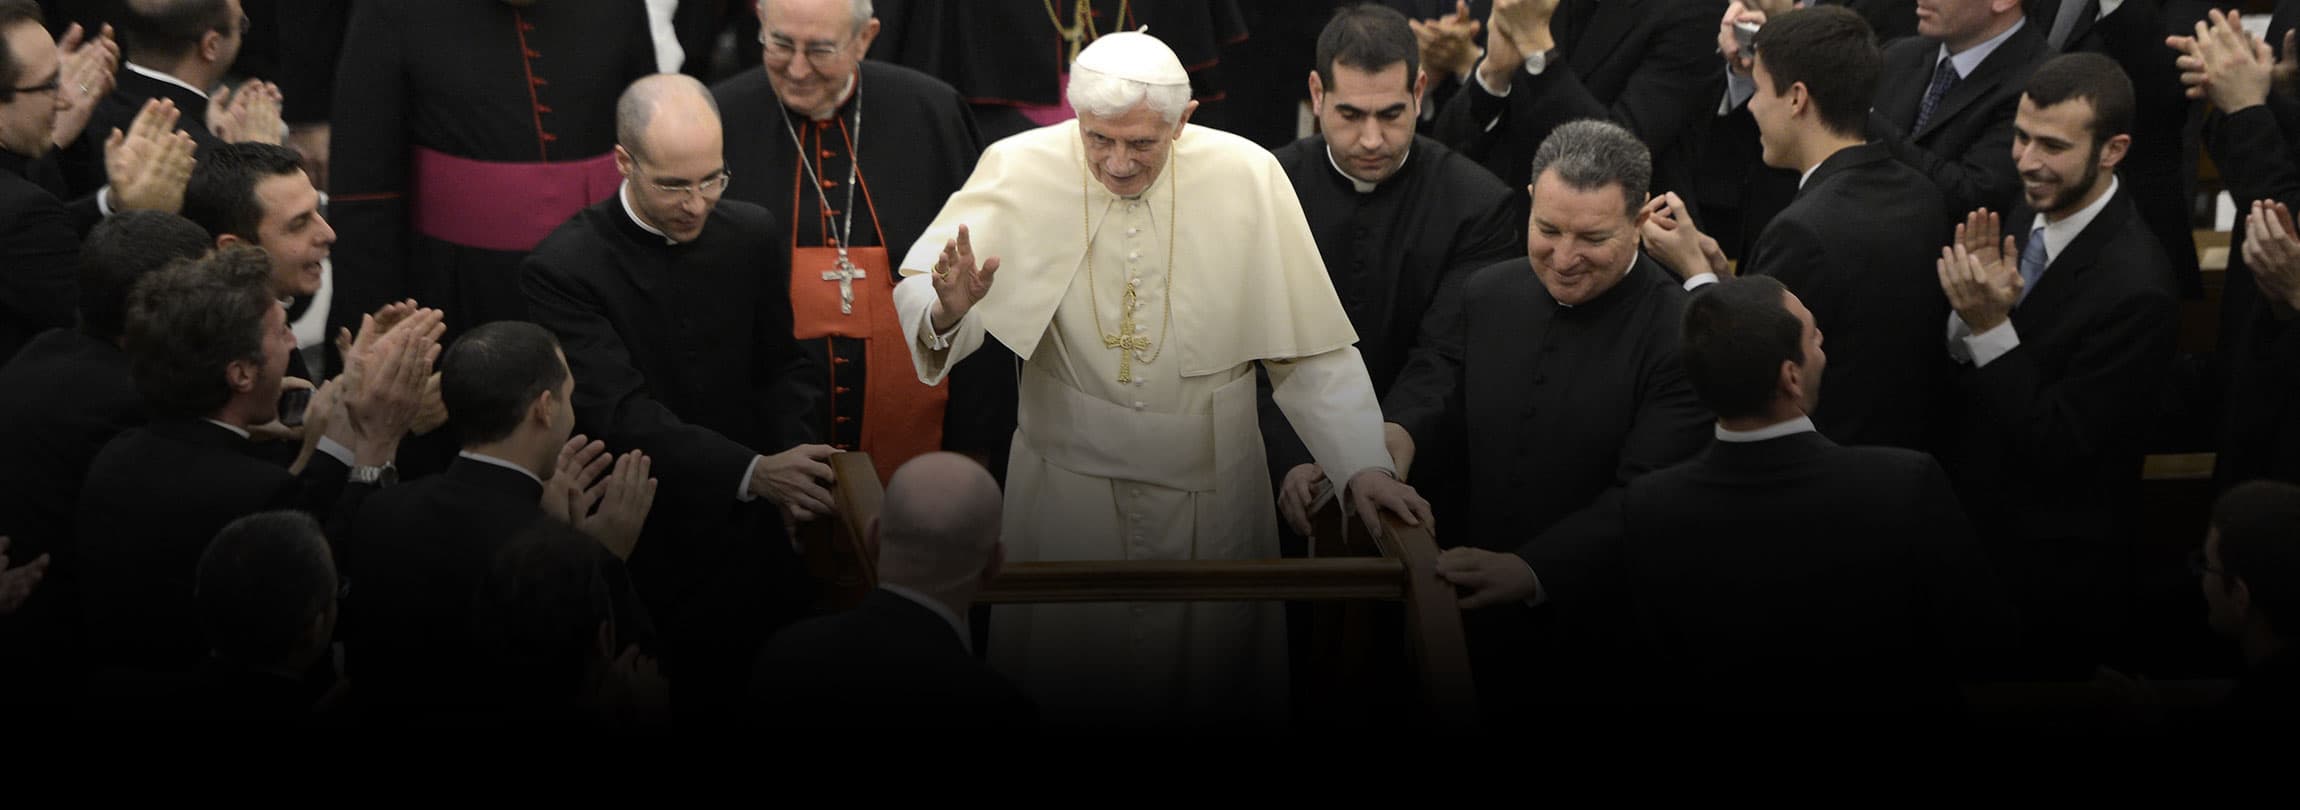 Solenidade de Todos os Santos: Neles vemos a vitória do amor, afirma o Papa Bento XVI